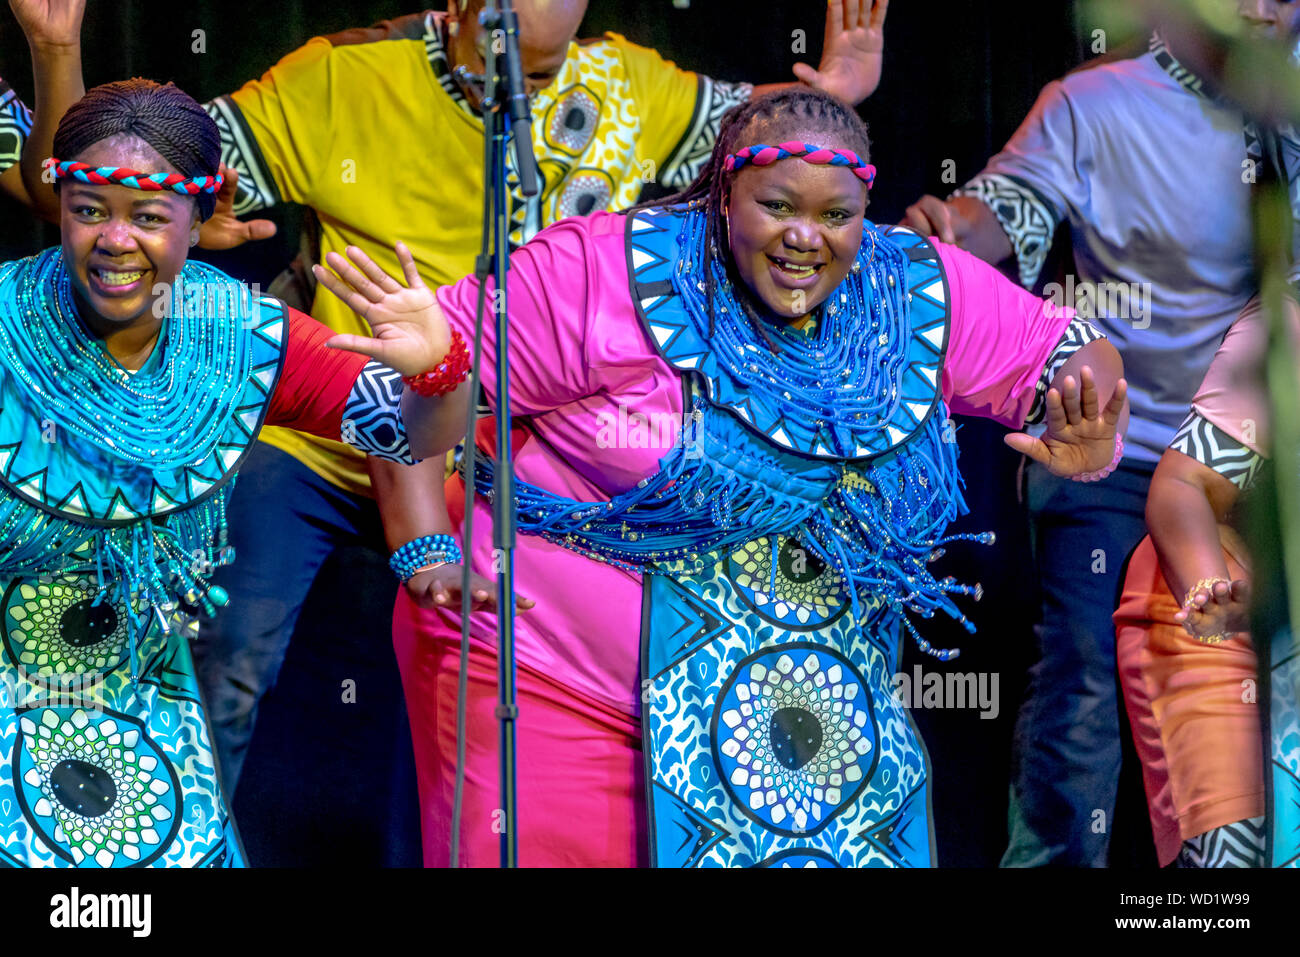 Soweto Gospel Choir at Adelaide Fringe season, Adelaide, Australia Stock Photo